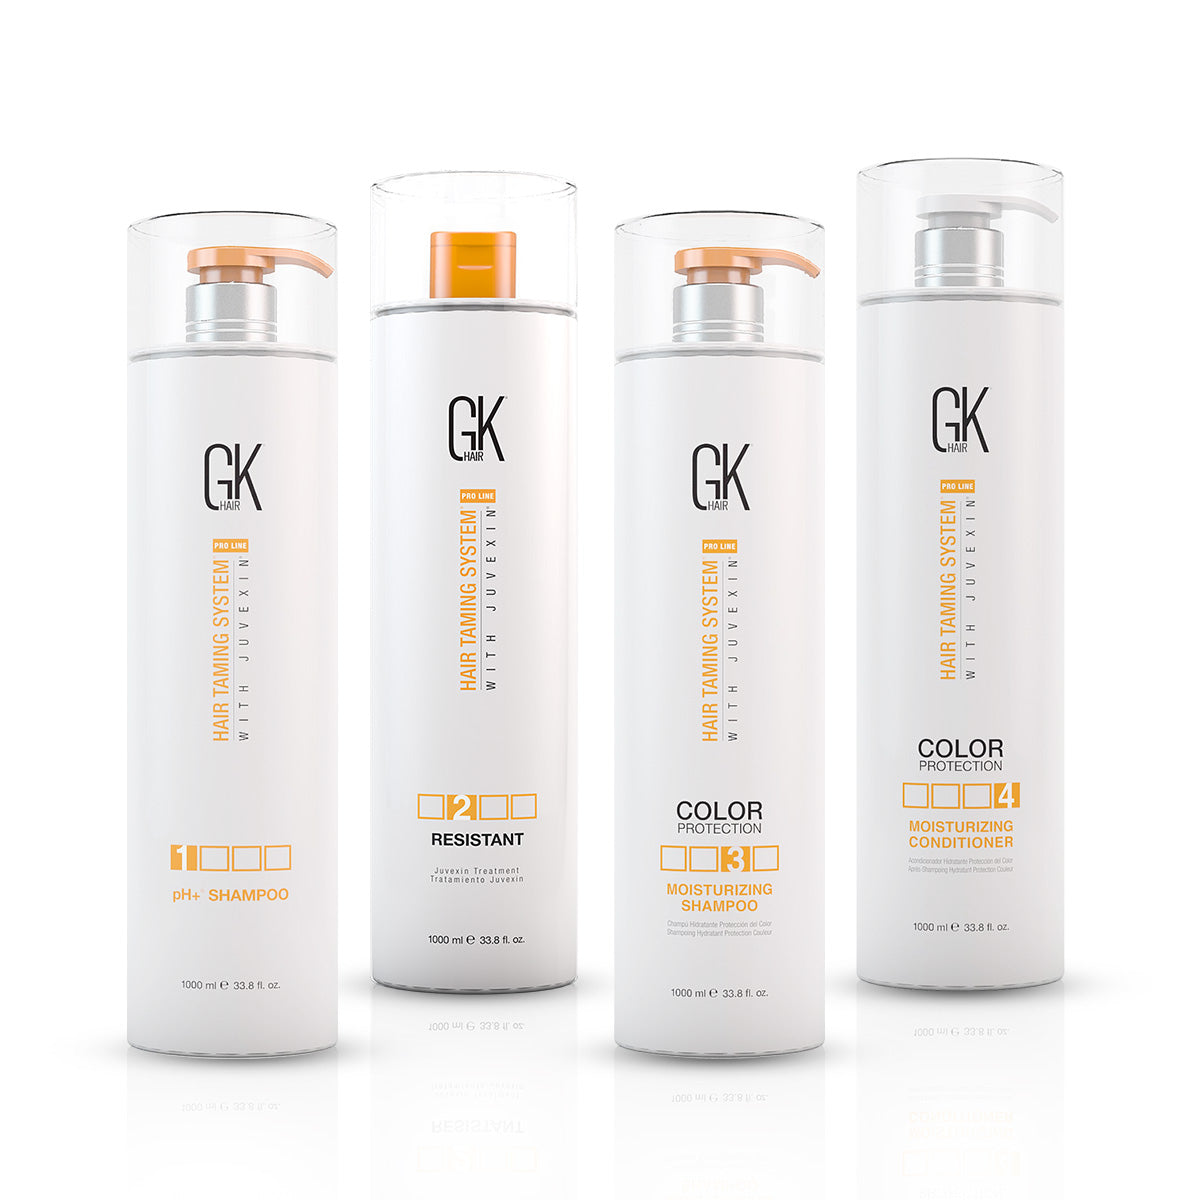 GK Hair Treatment Kit : Moisturizing Range - 1000ml (Pack of 4) Combo ...